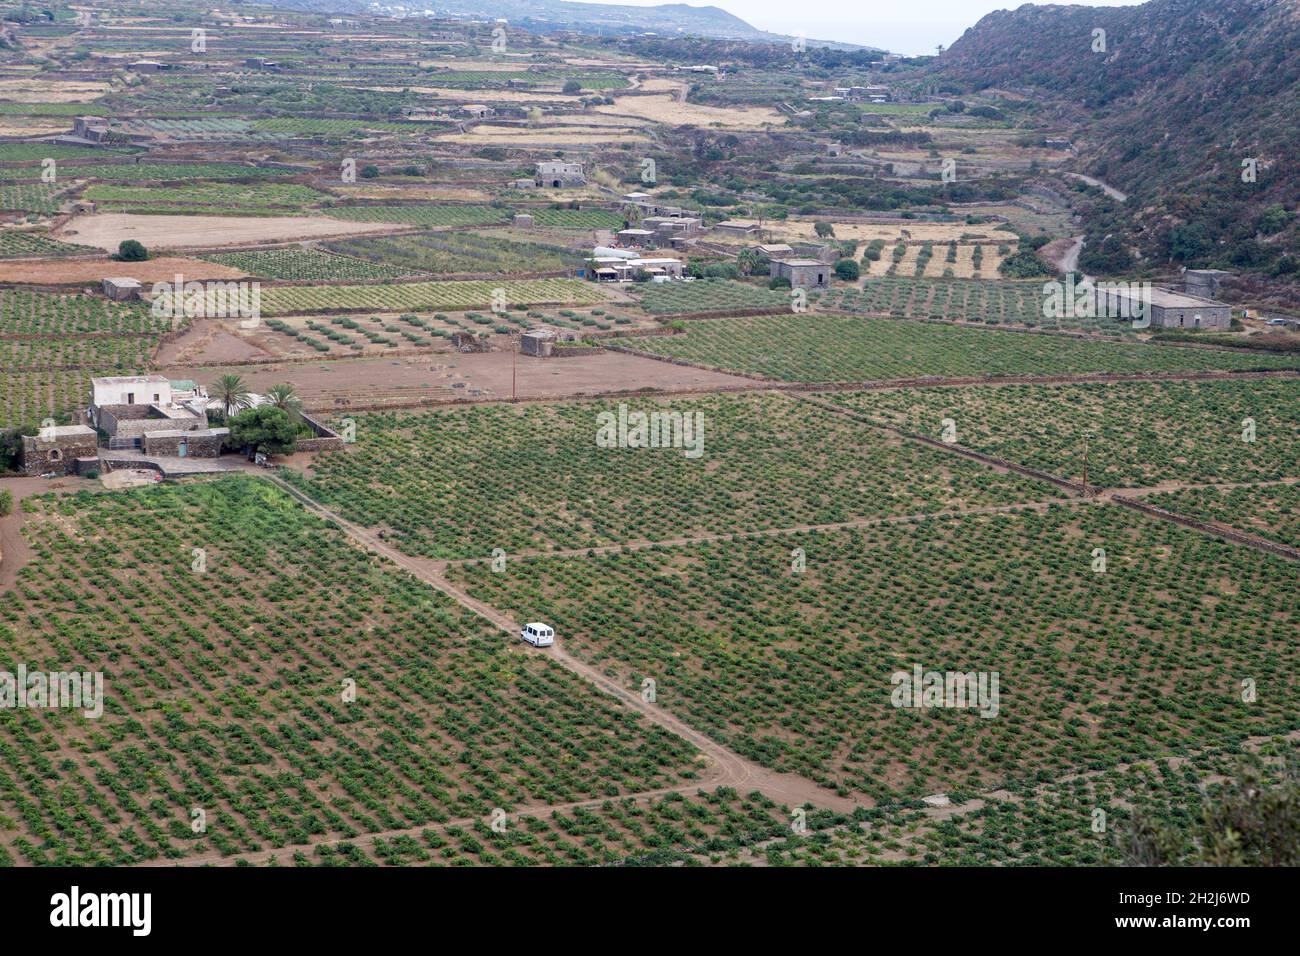 La vallée de Monastero est l'une des zones les plus fertiles de l'île presque entièrement couverte de vignobles des célèbres raisins de Zibibbo Banque D'Images